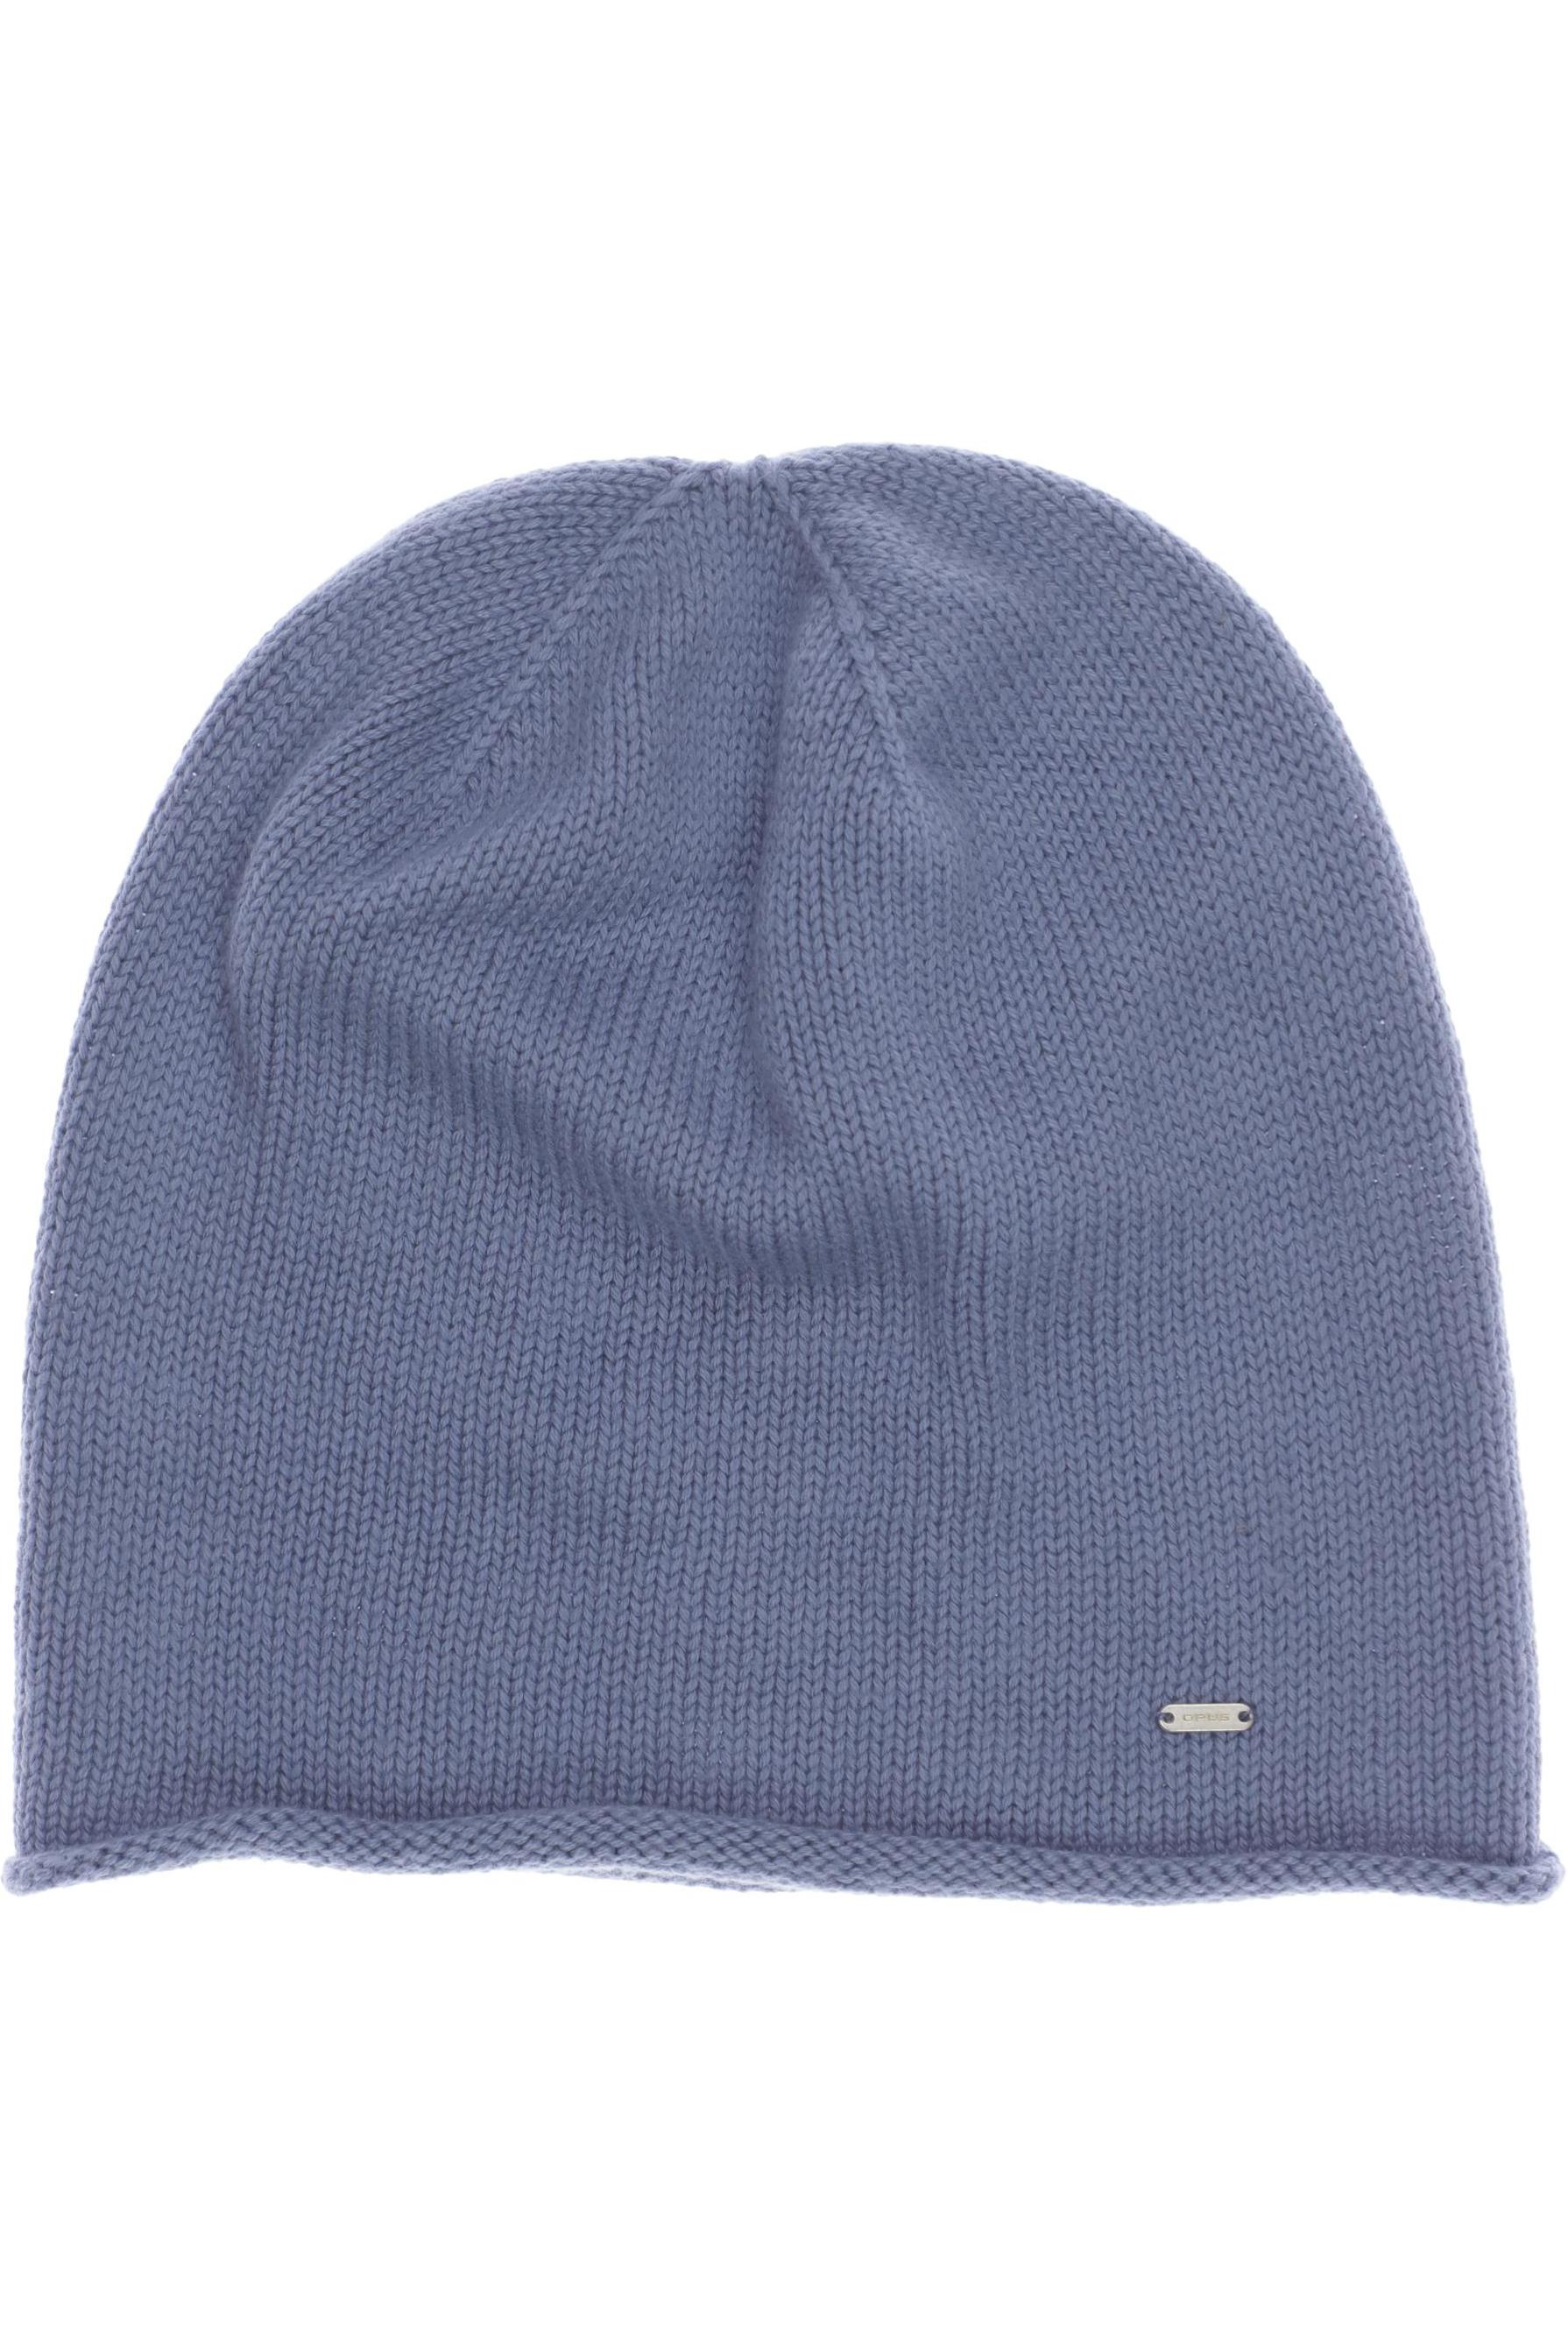 Opus Damen Hut/Mütze, blau von Opus